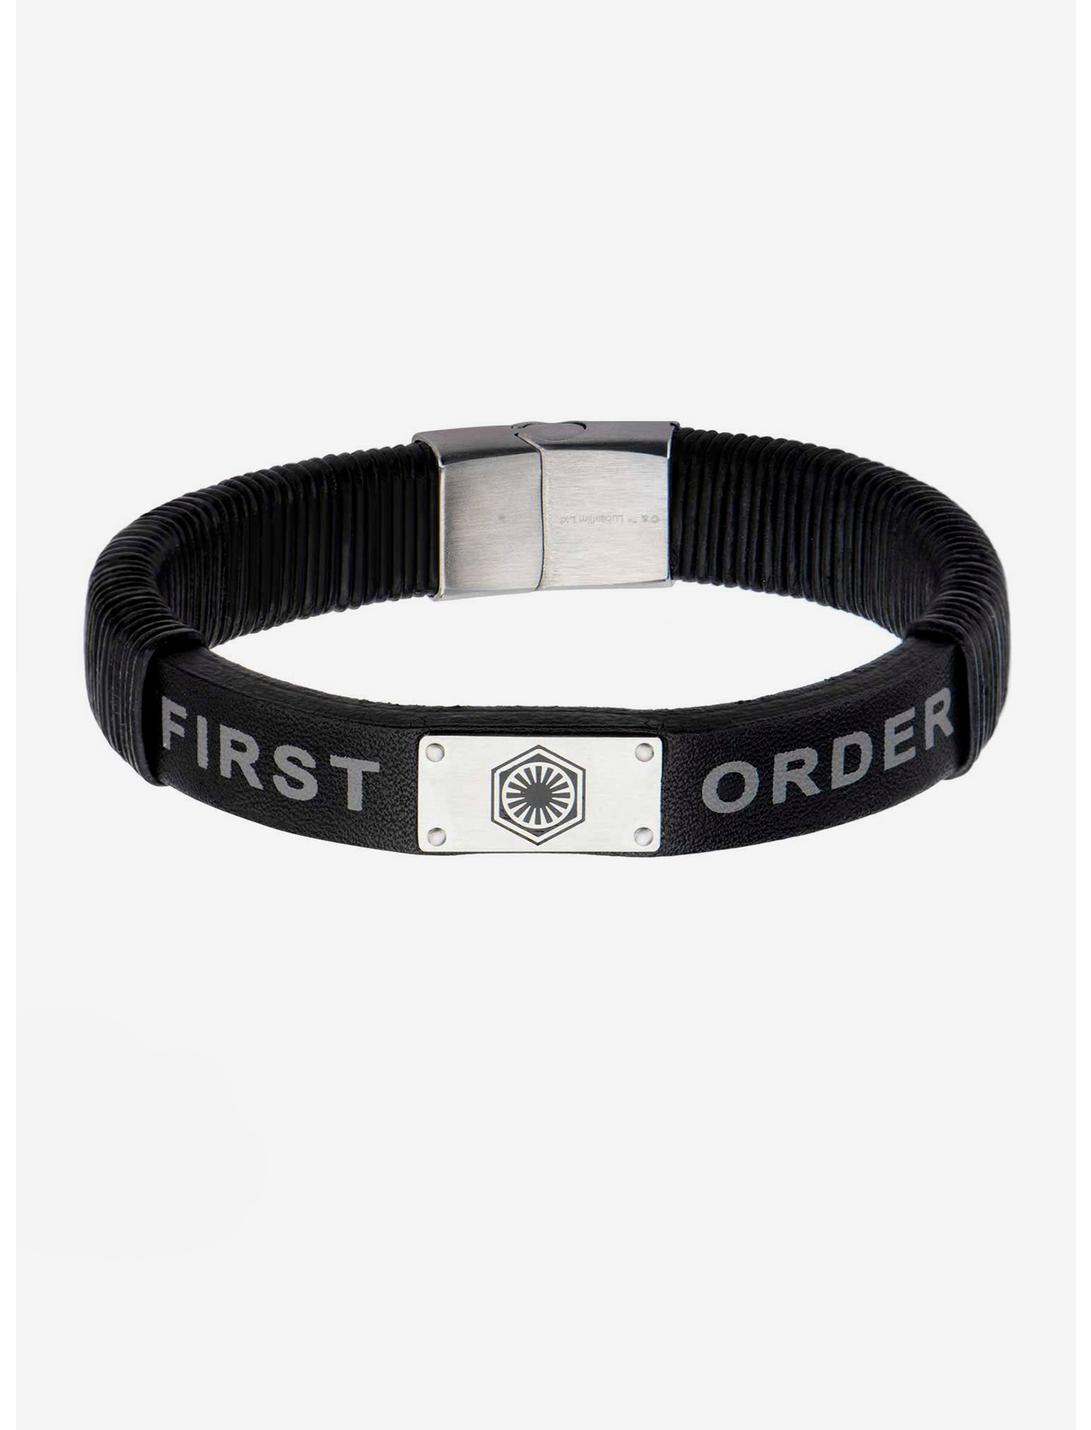 Star Wars: The Force Awakens First Order Leather Bracelet, , hi-res